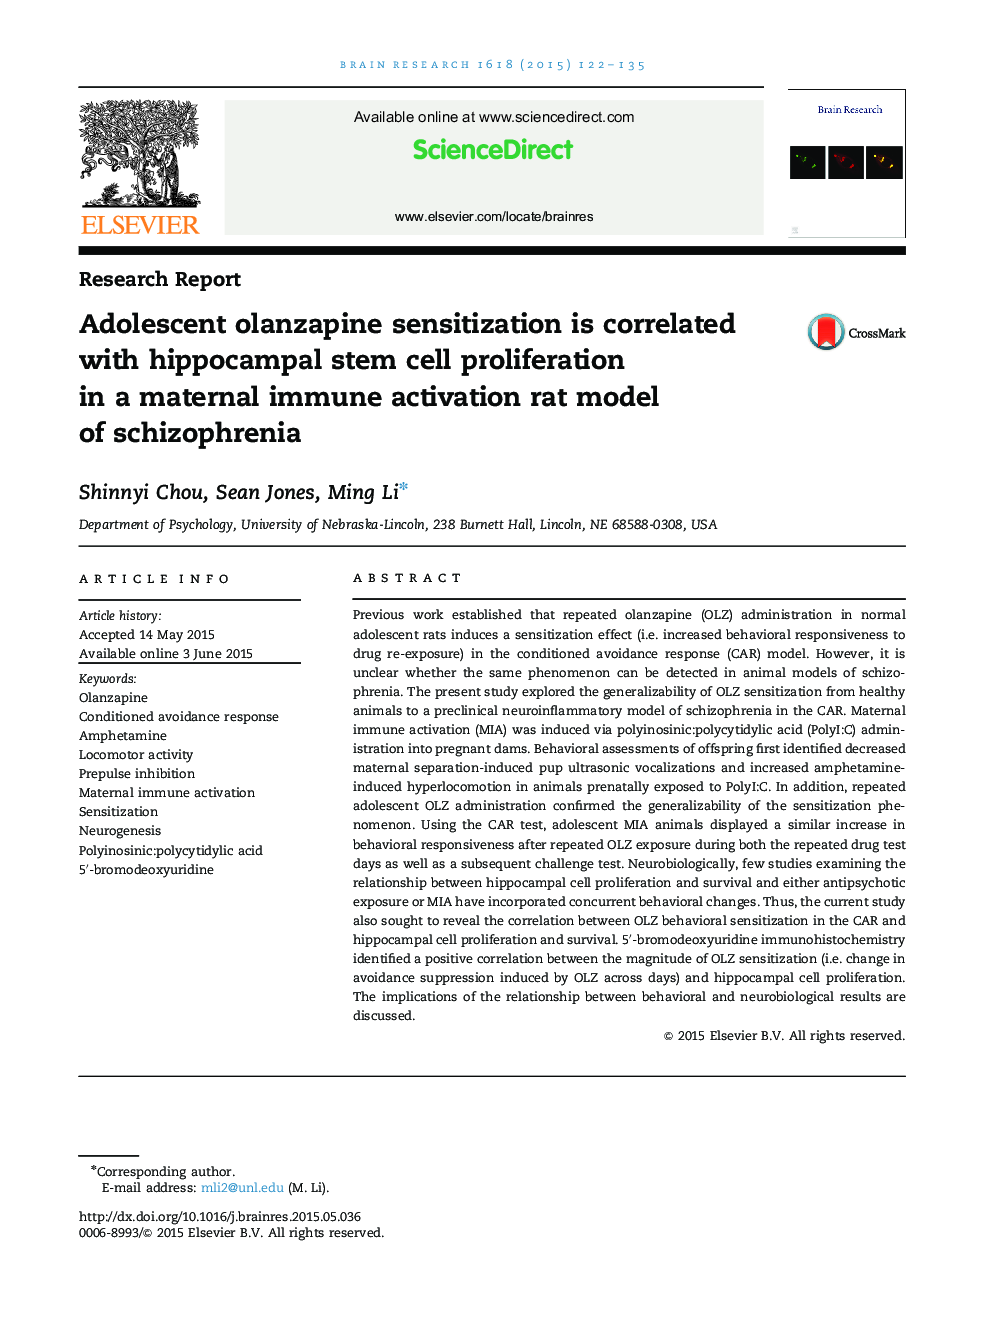 گزارش تحقیق حساسیت آلانزاپین نوجوان در ارتباط با تکثیر سلول بنیادی هیپوکامپ در یک مدل موش صحرایی فعالیت ایمن مادری اسکیزوفرنیا 